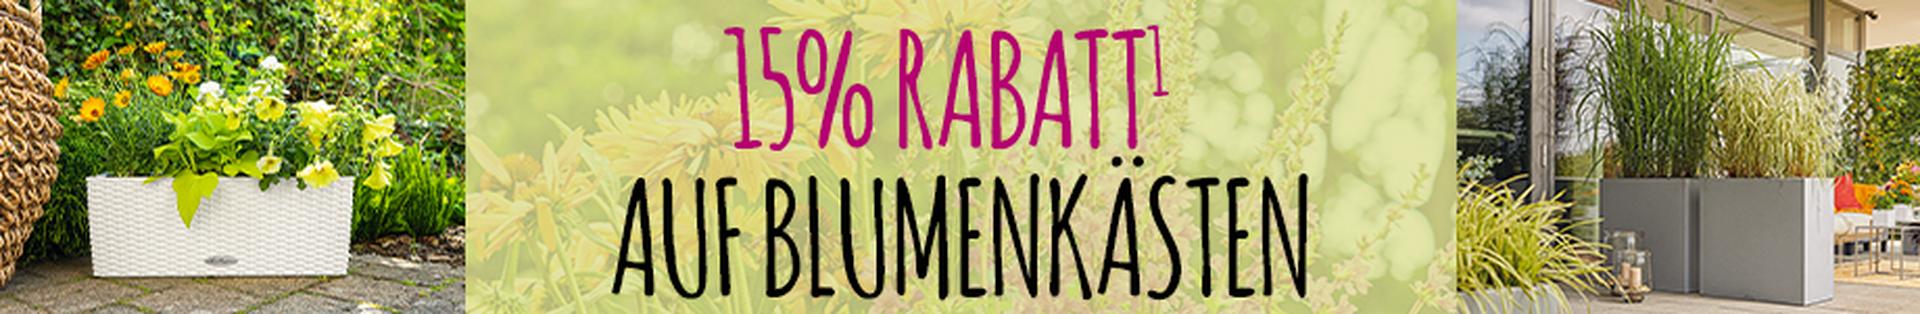 Willkommen auf Balkonien! 15% Rabatt auf Blumenkästen